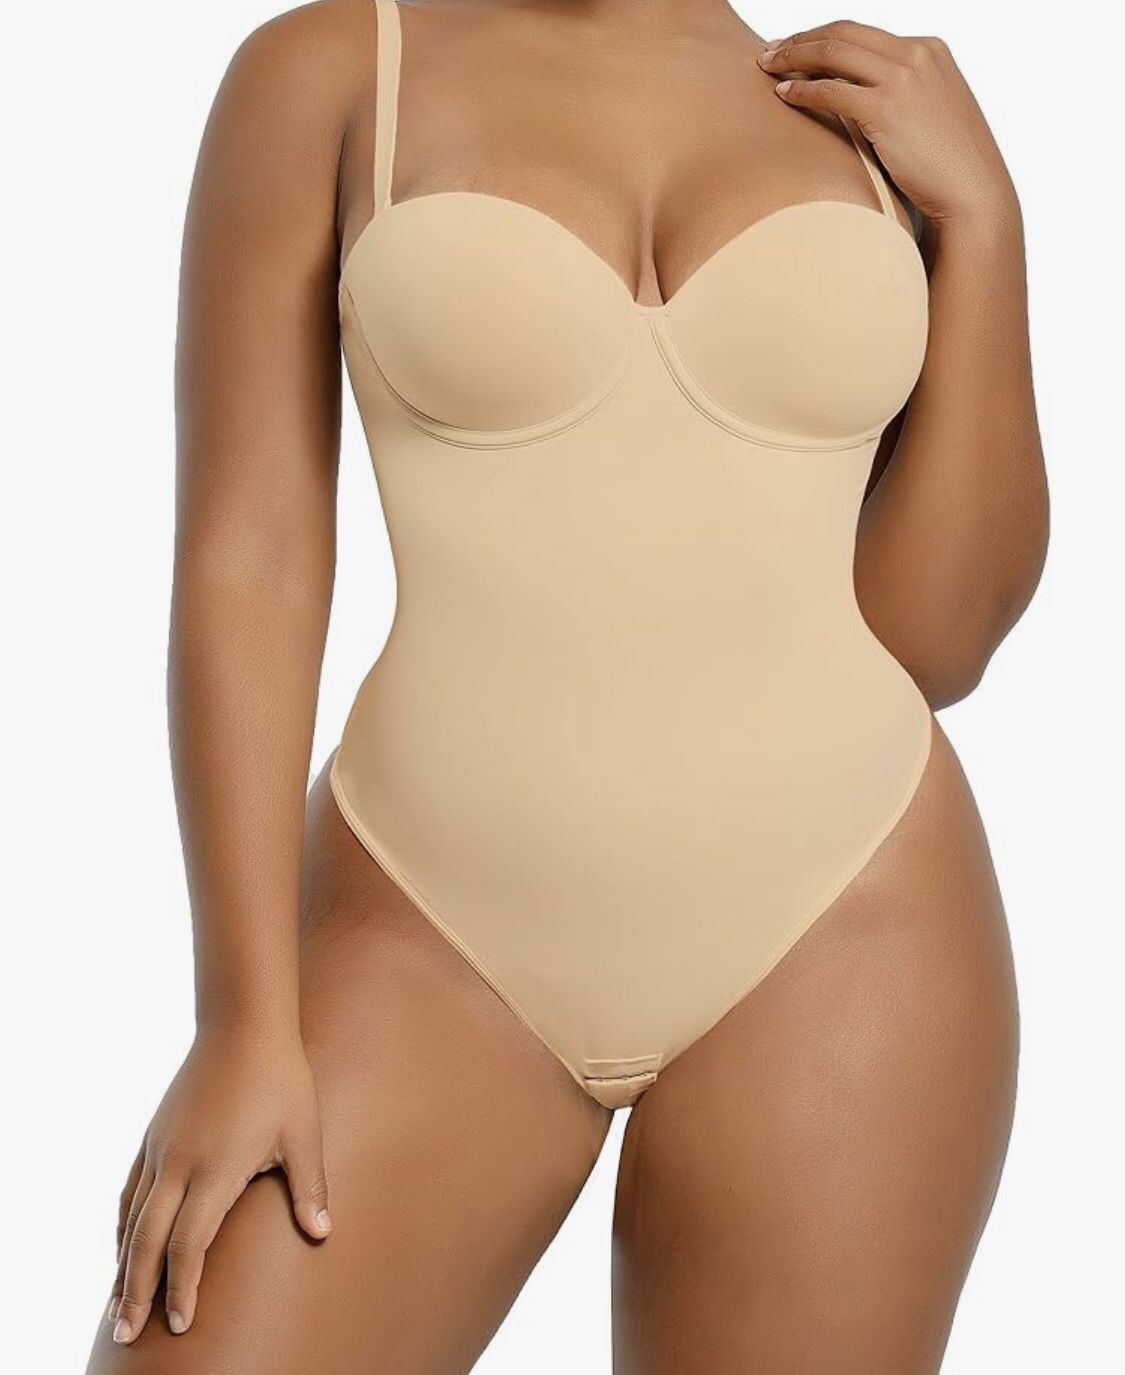 Shappellx Bodysuit Size S  Retails $69